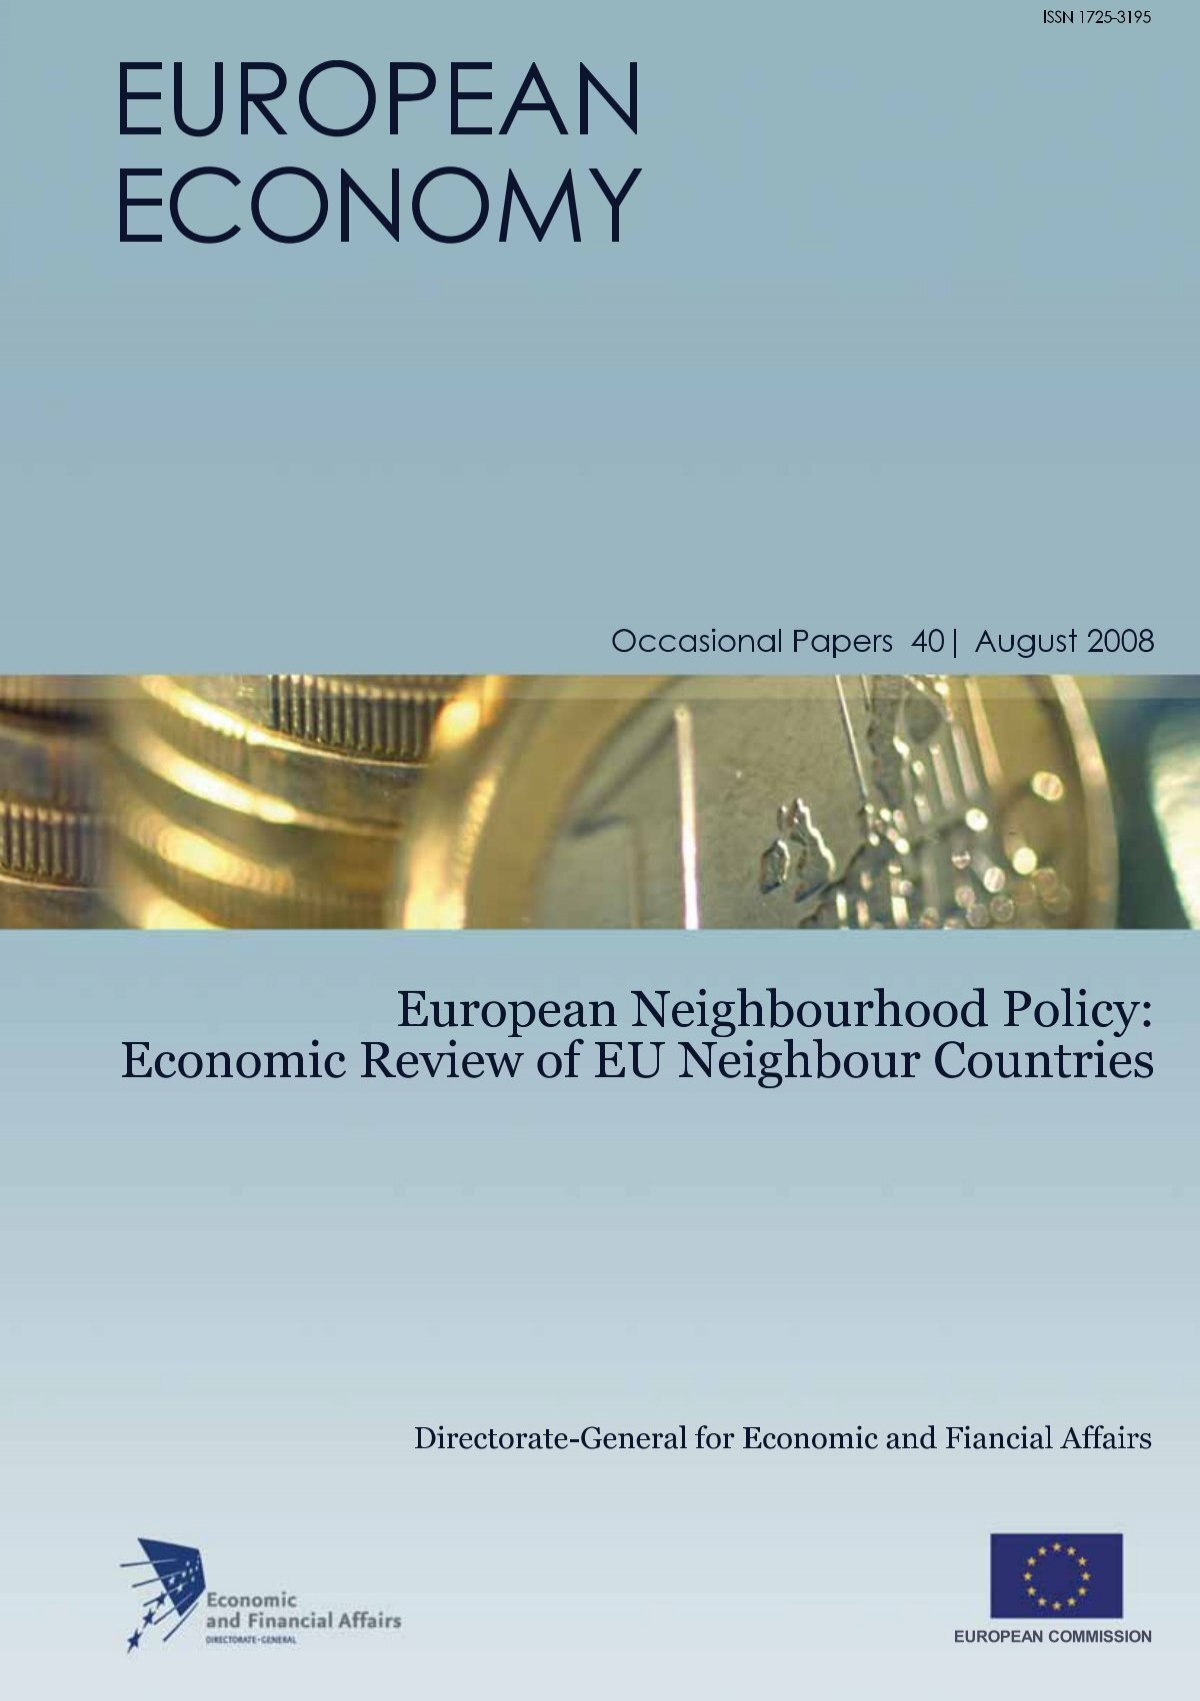 Economic Review of EU Neighbour Countries - European